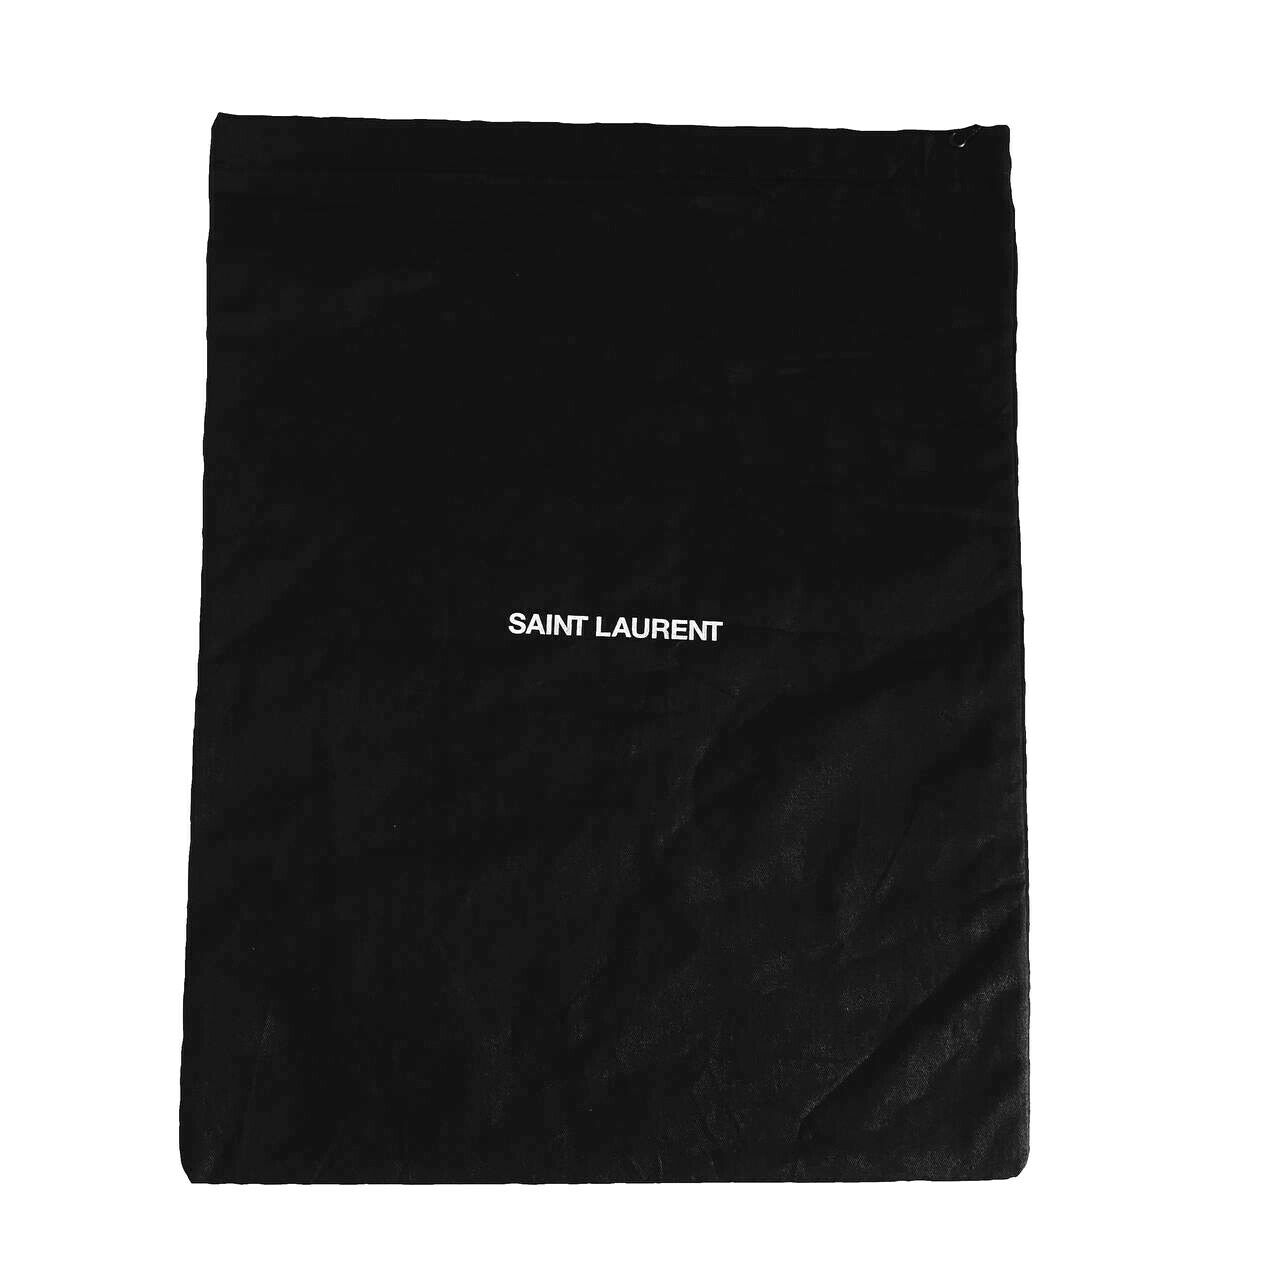 Authentic Saint Laurent Dust Bag Lot Black ~16x12" For Shoes, Handbags Etc